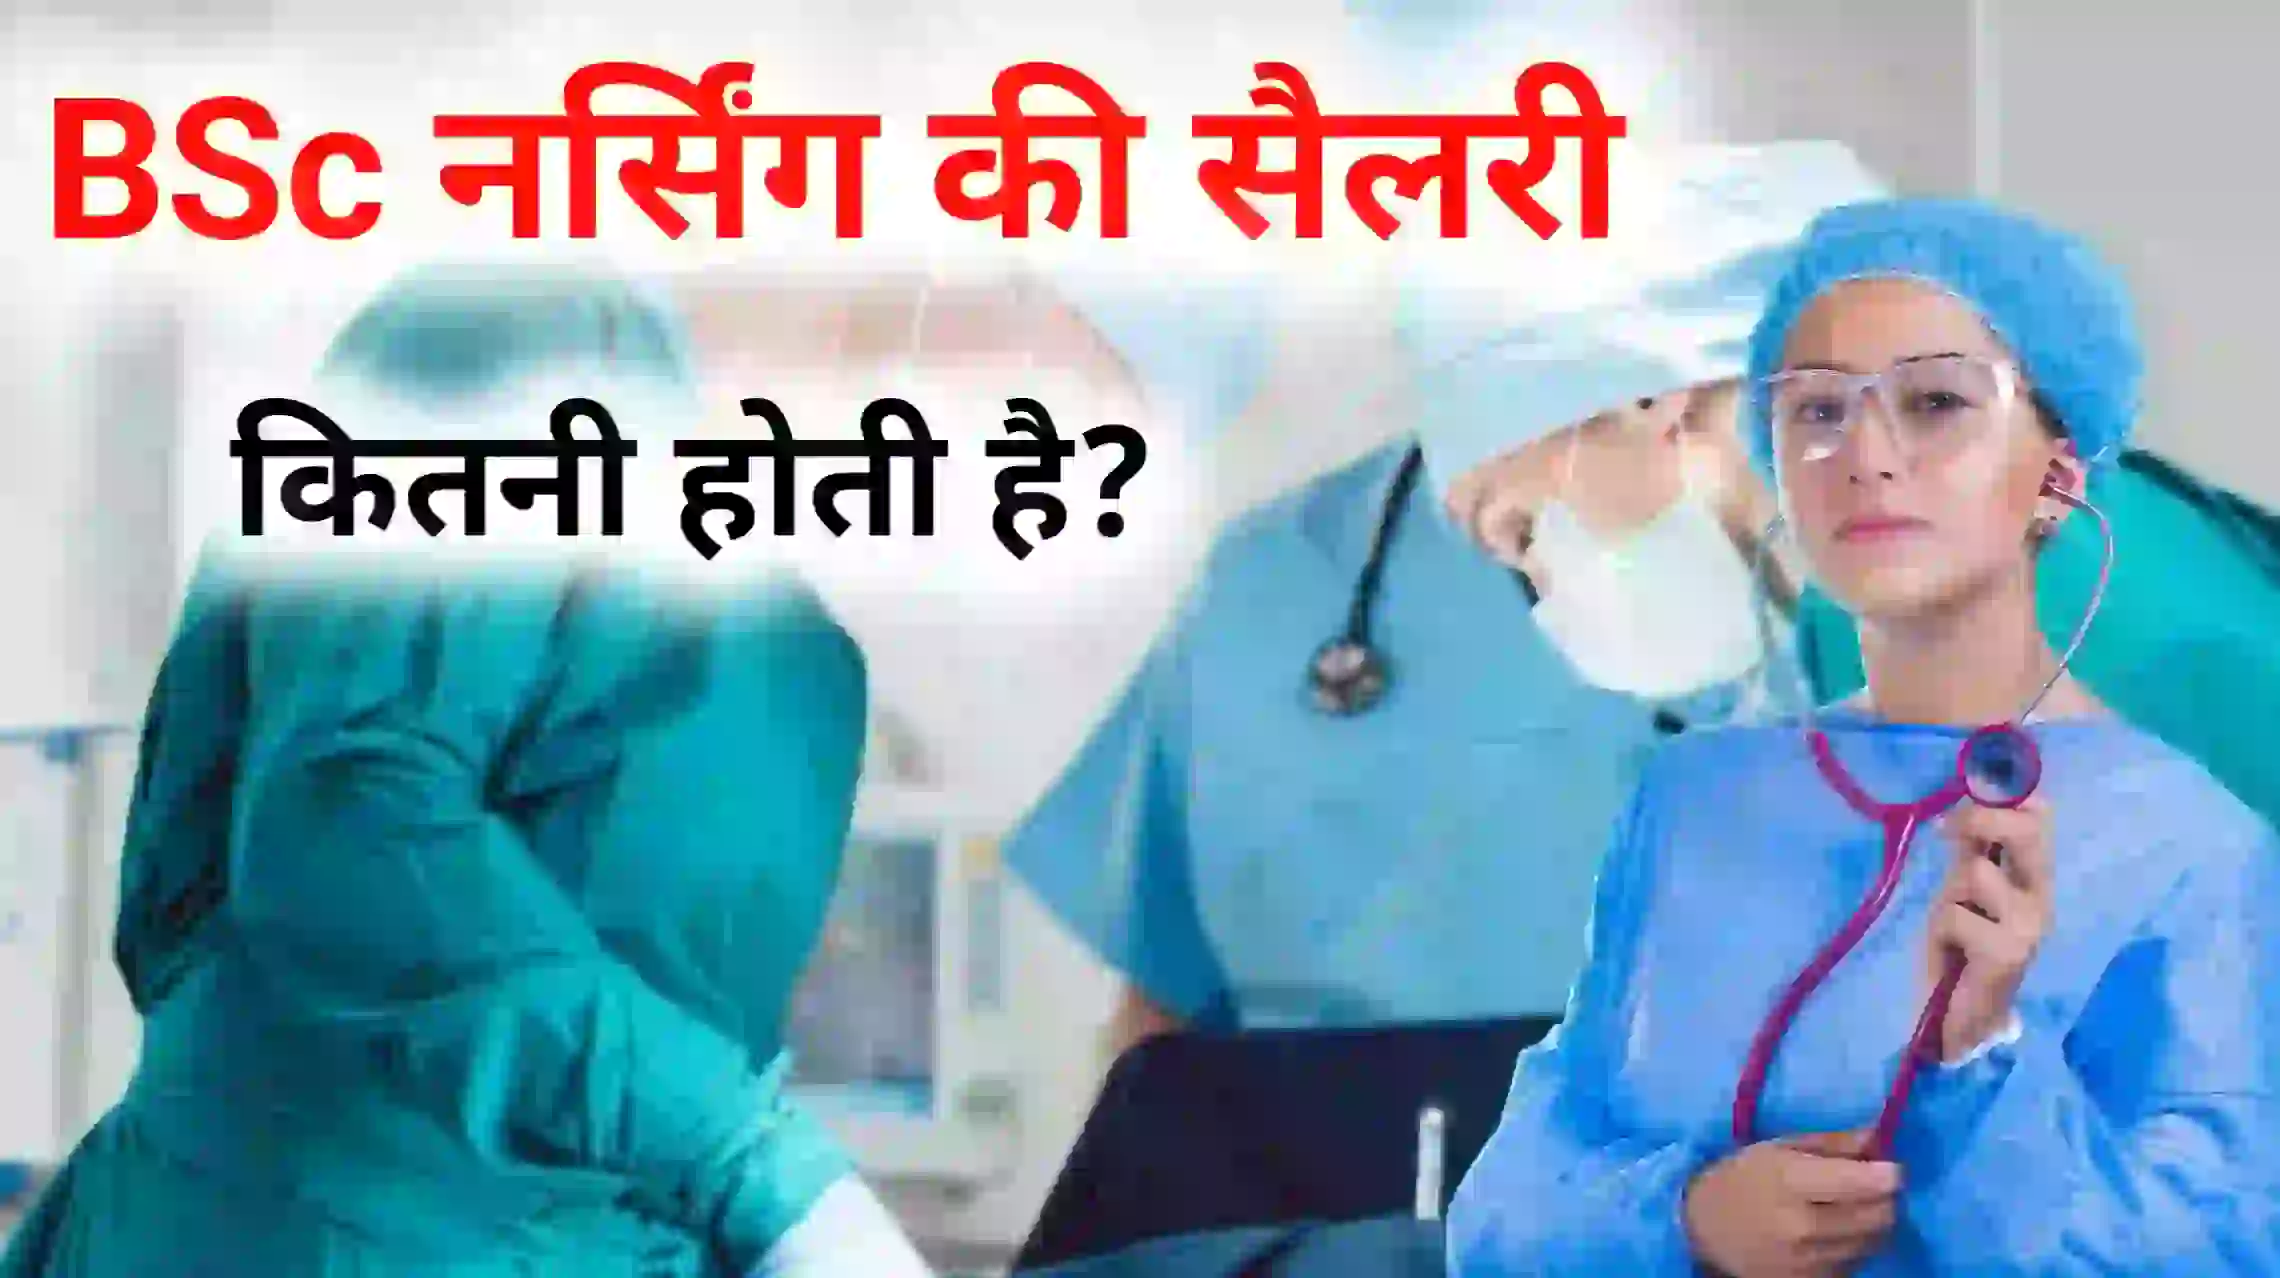 bsc nursing ki Sarkari salary kitni hoti hai